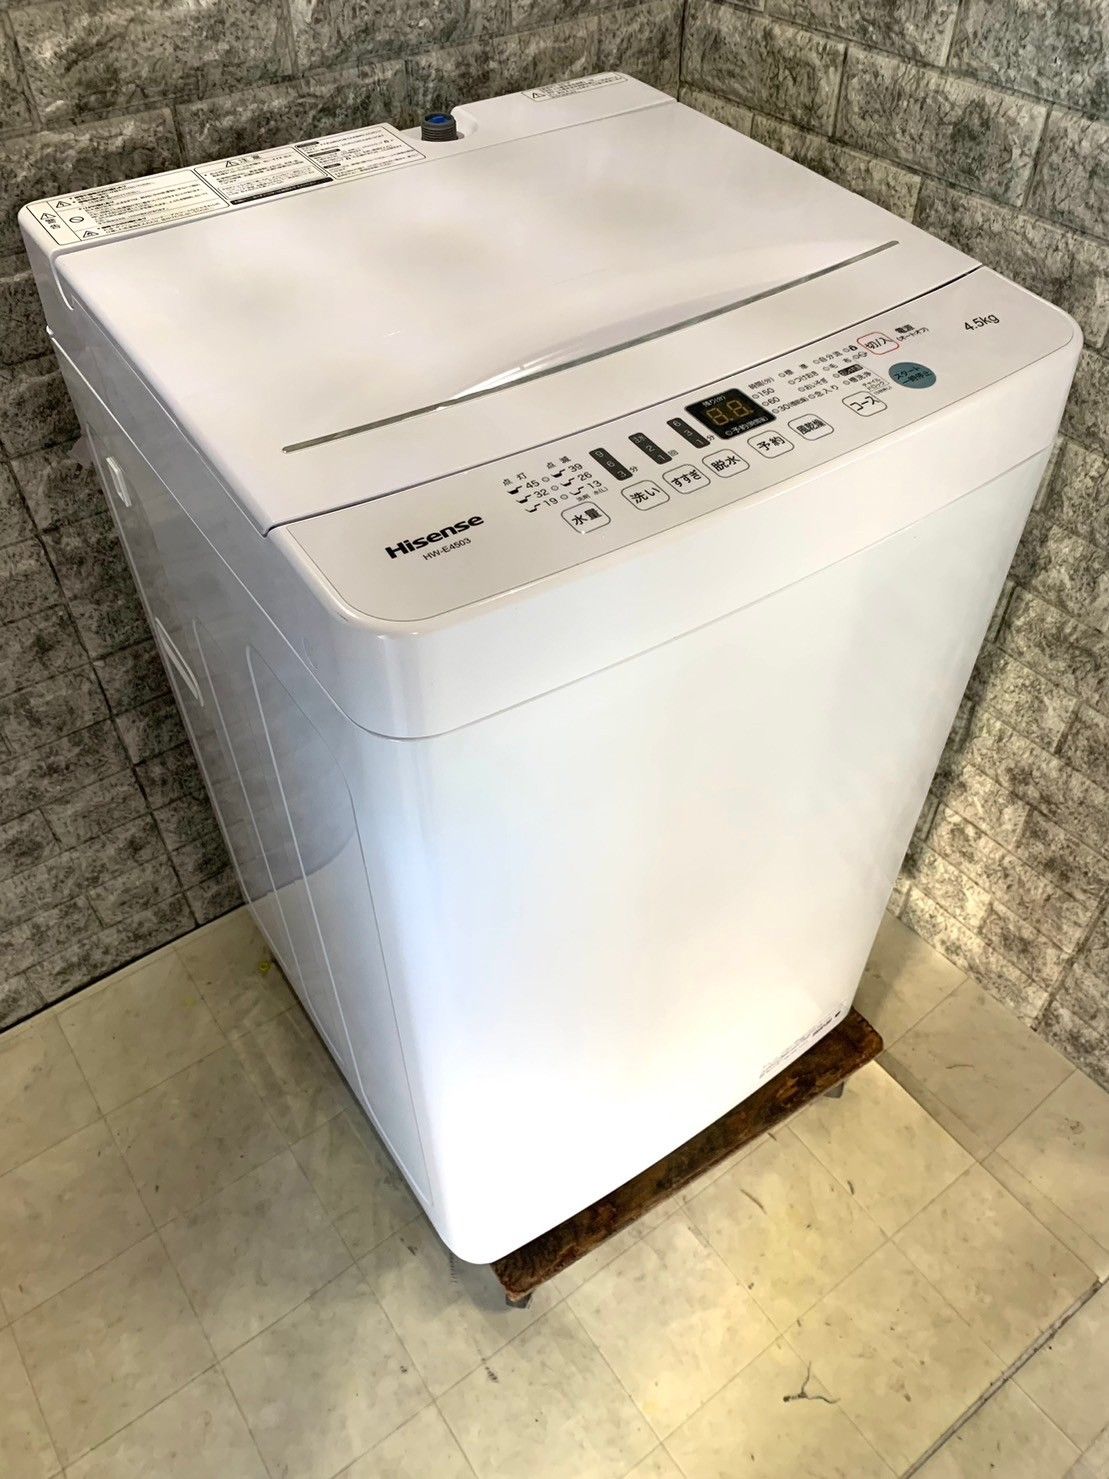 店頭販売のみ】Hisenseの全自動洗濯機『HW-E4502』入荷しました - 生活家電